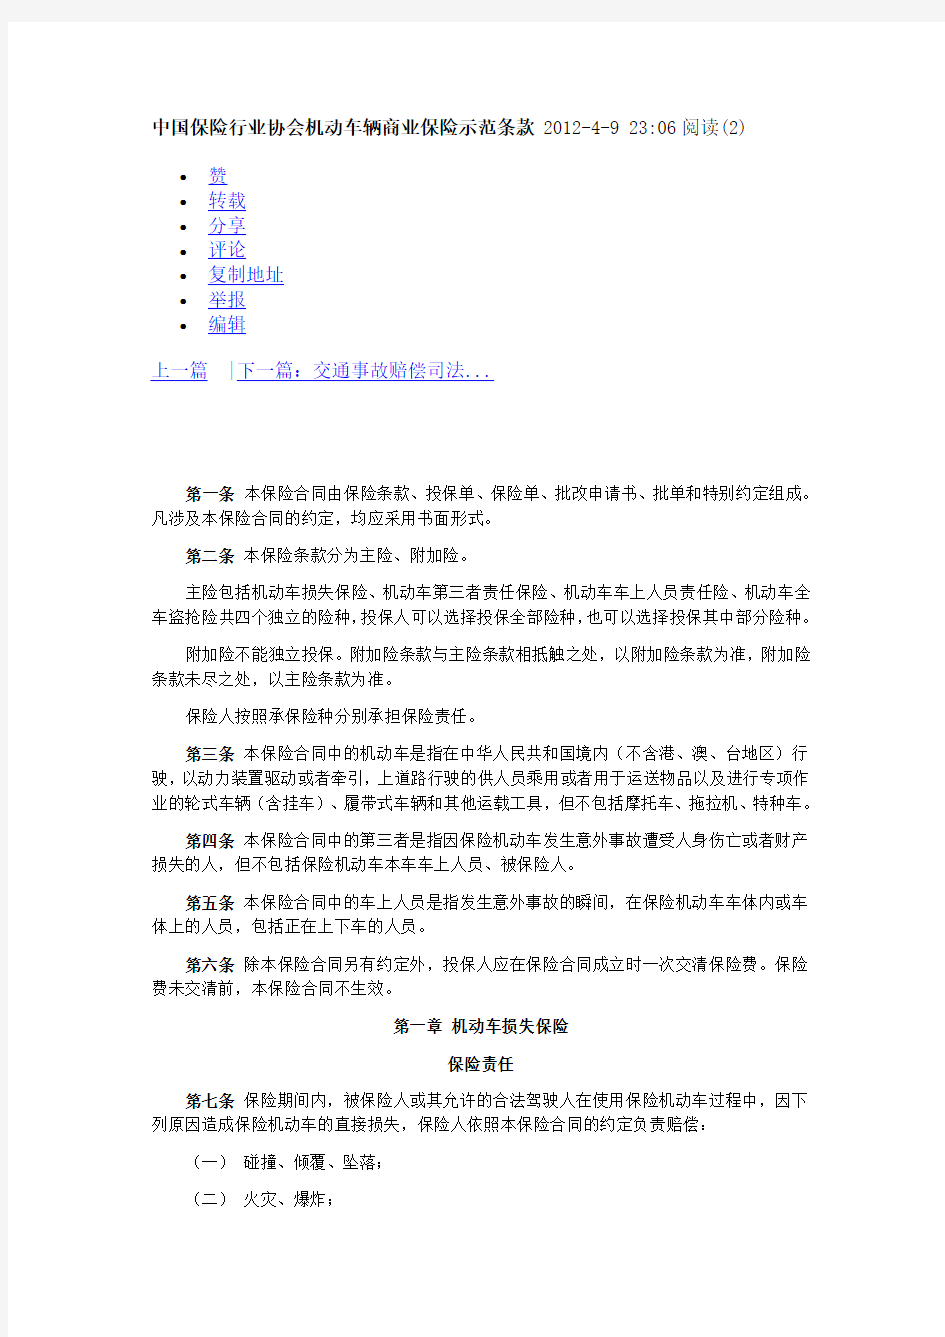 中国保险行业协会机动车辆商业保险示范条款 2012